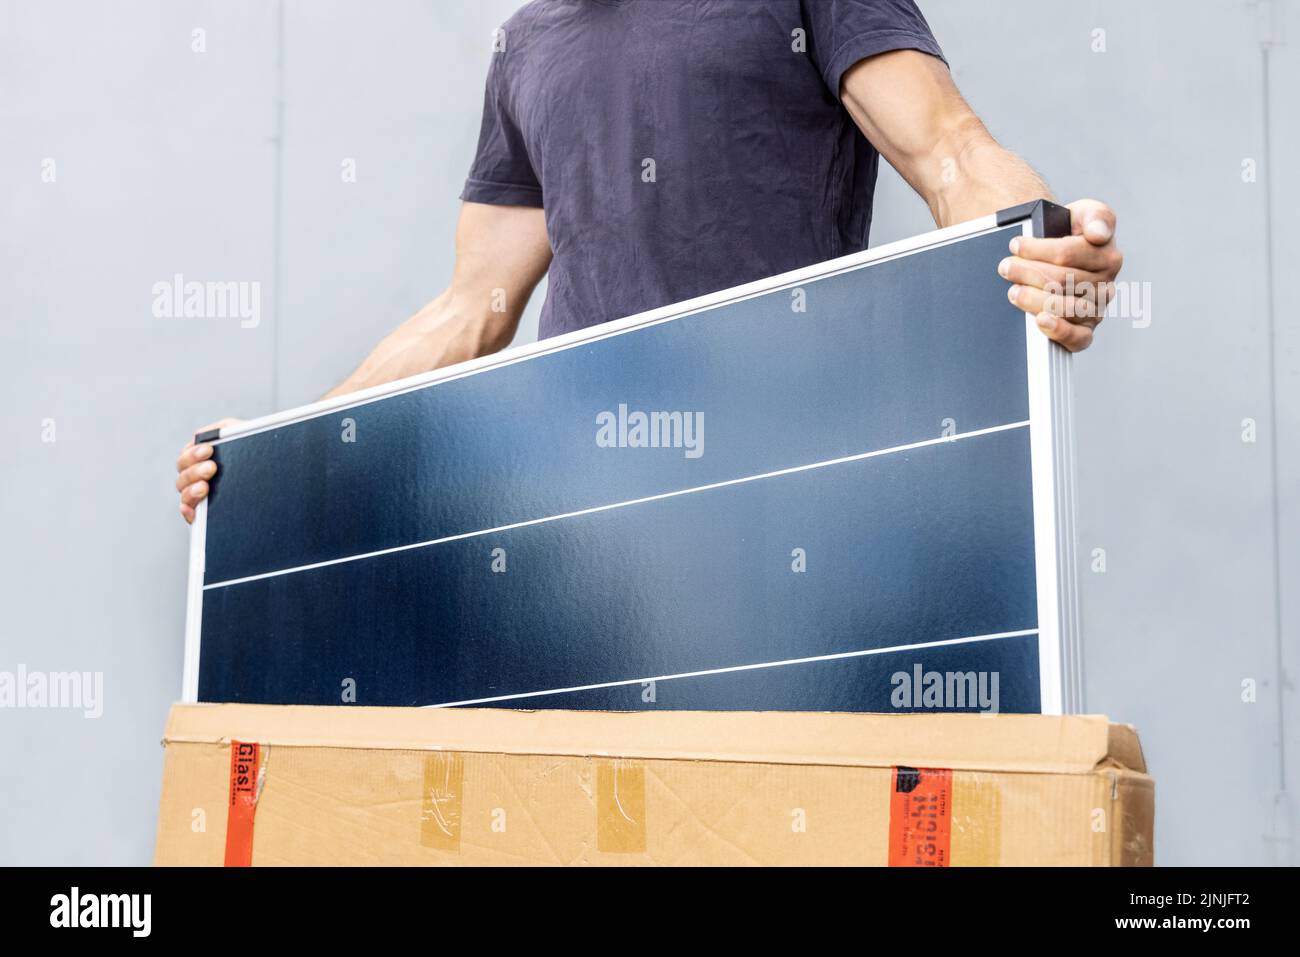 Personne prenant un nouveau panneau solaire hors de la boîte Banque D'Images